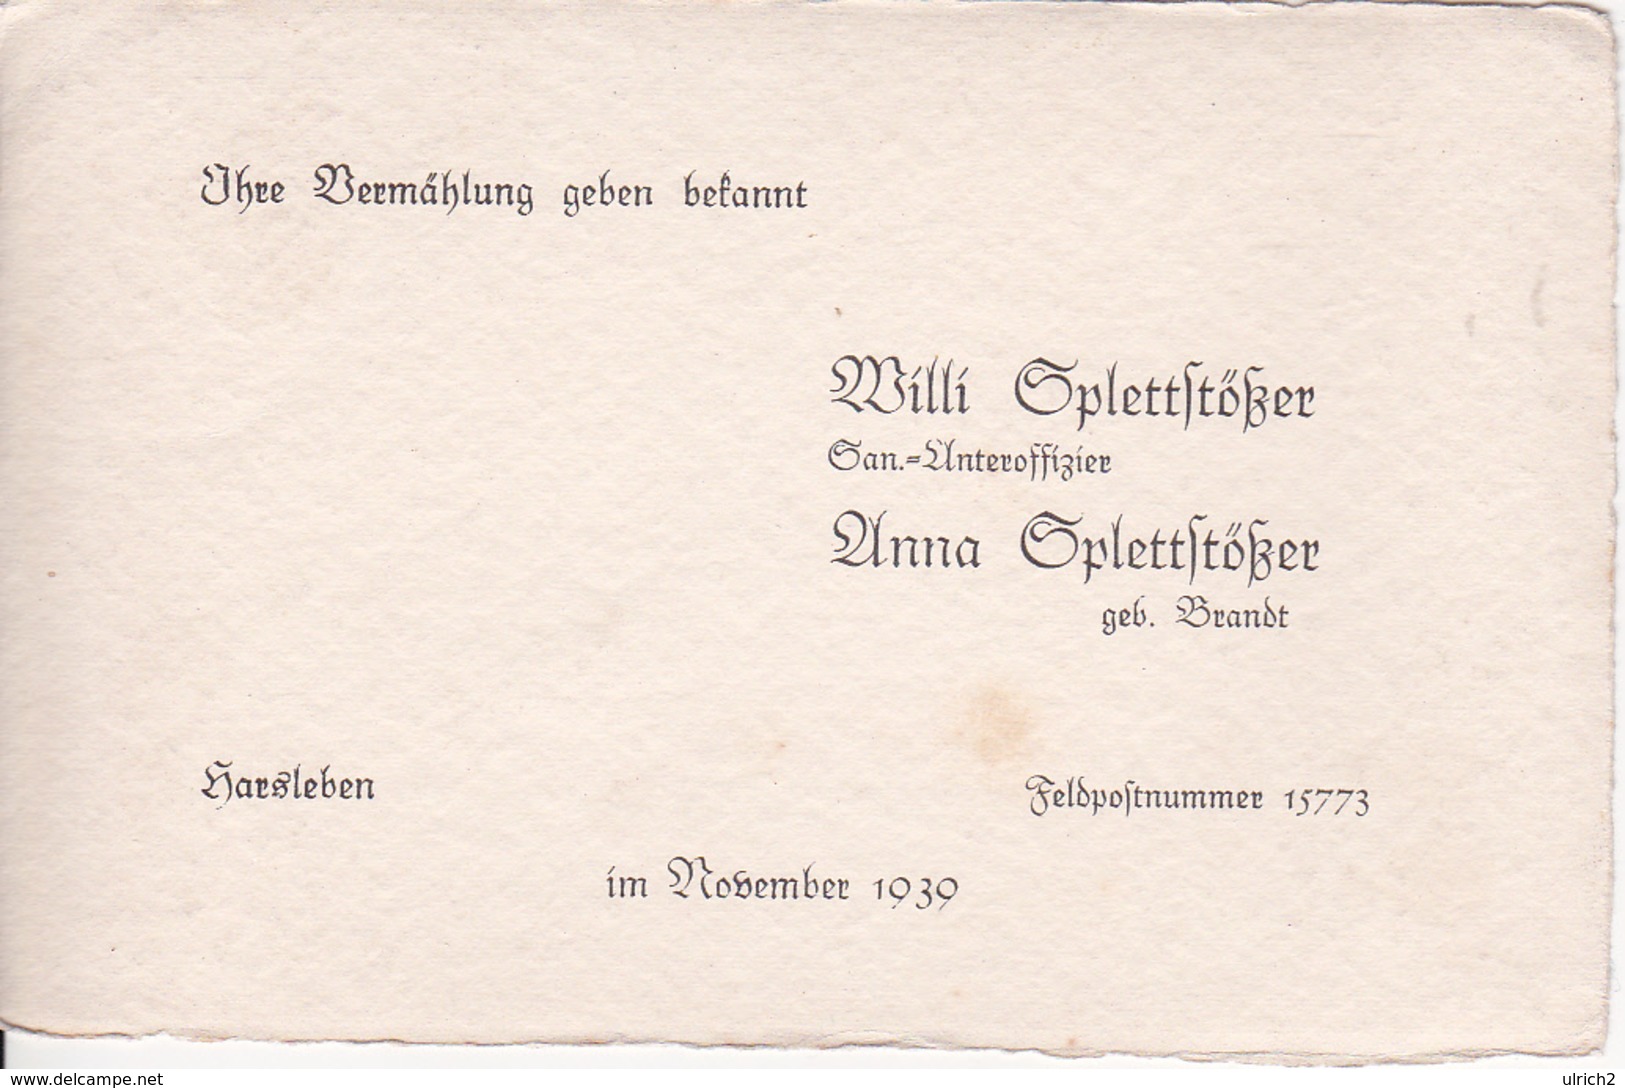 Vermählungs-Anzeige - Willi Und Anna Splettstößer - Harsleben / Feldpostnummer 15773 - November 1939 (26062) - Huwelijksaankondigingen